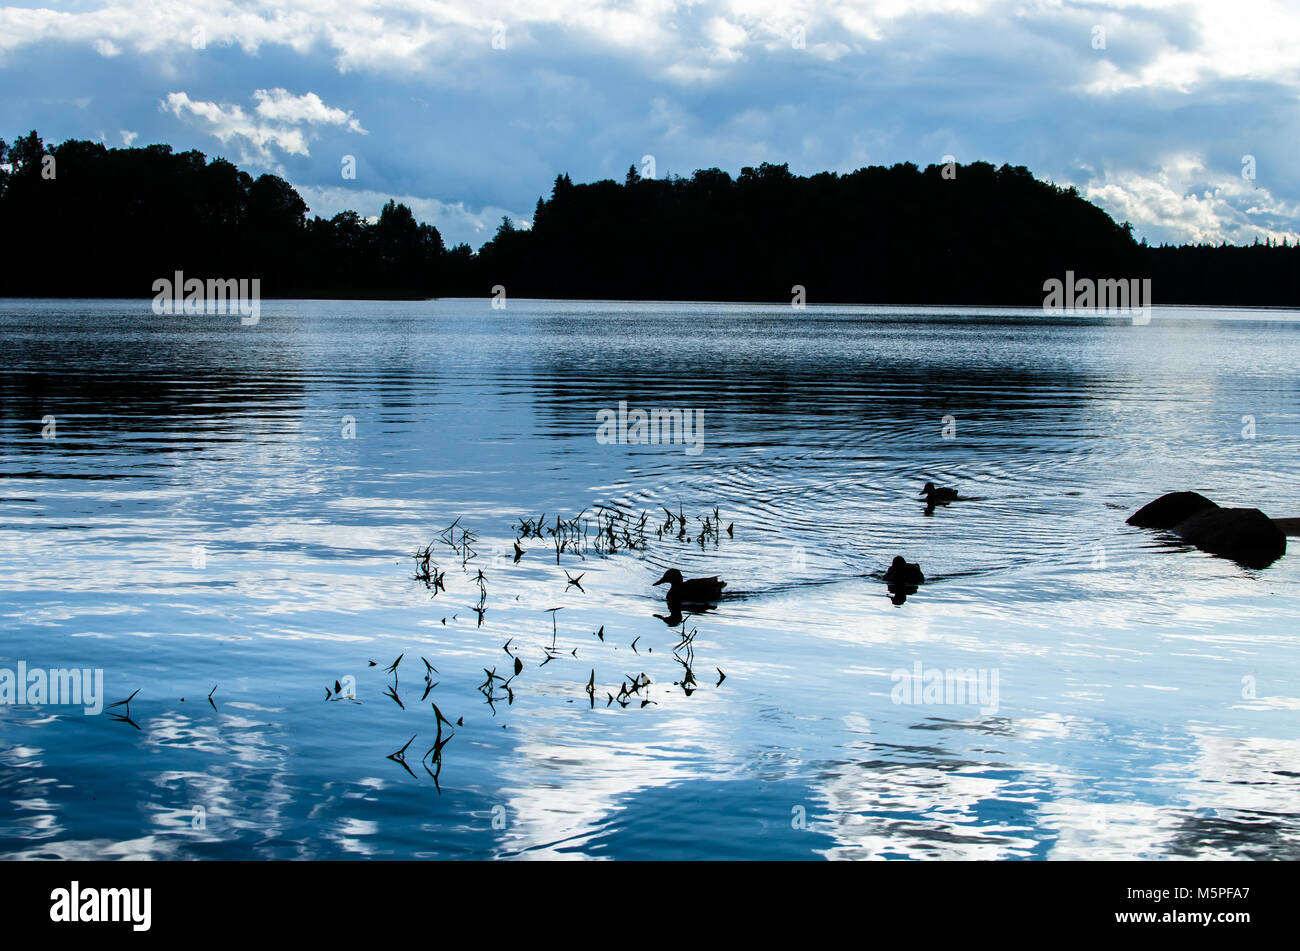 Mallards swimming on a peaceful evening on Lake Pühajärv ('Holy lake') near the town of Otepää, Estonia Stock Photo